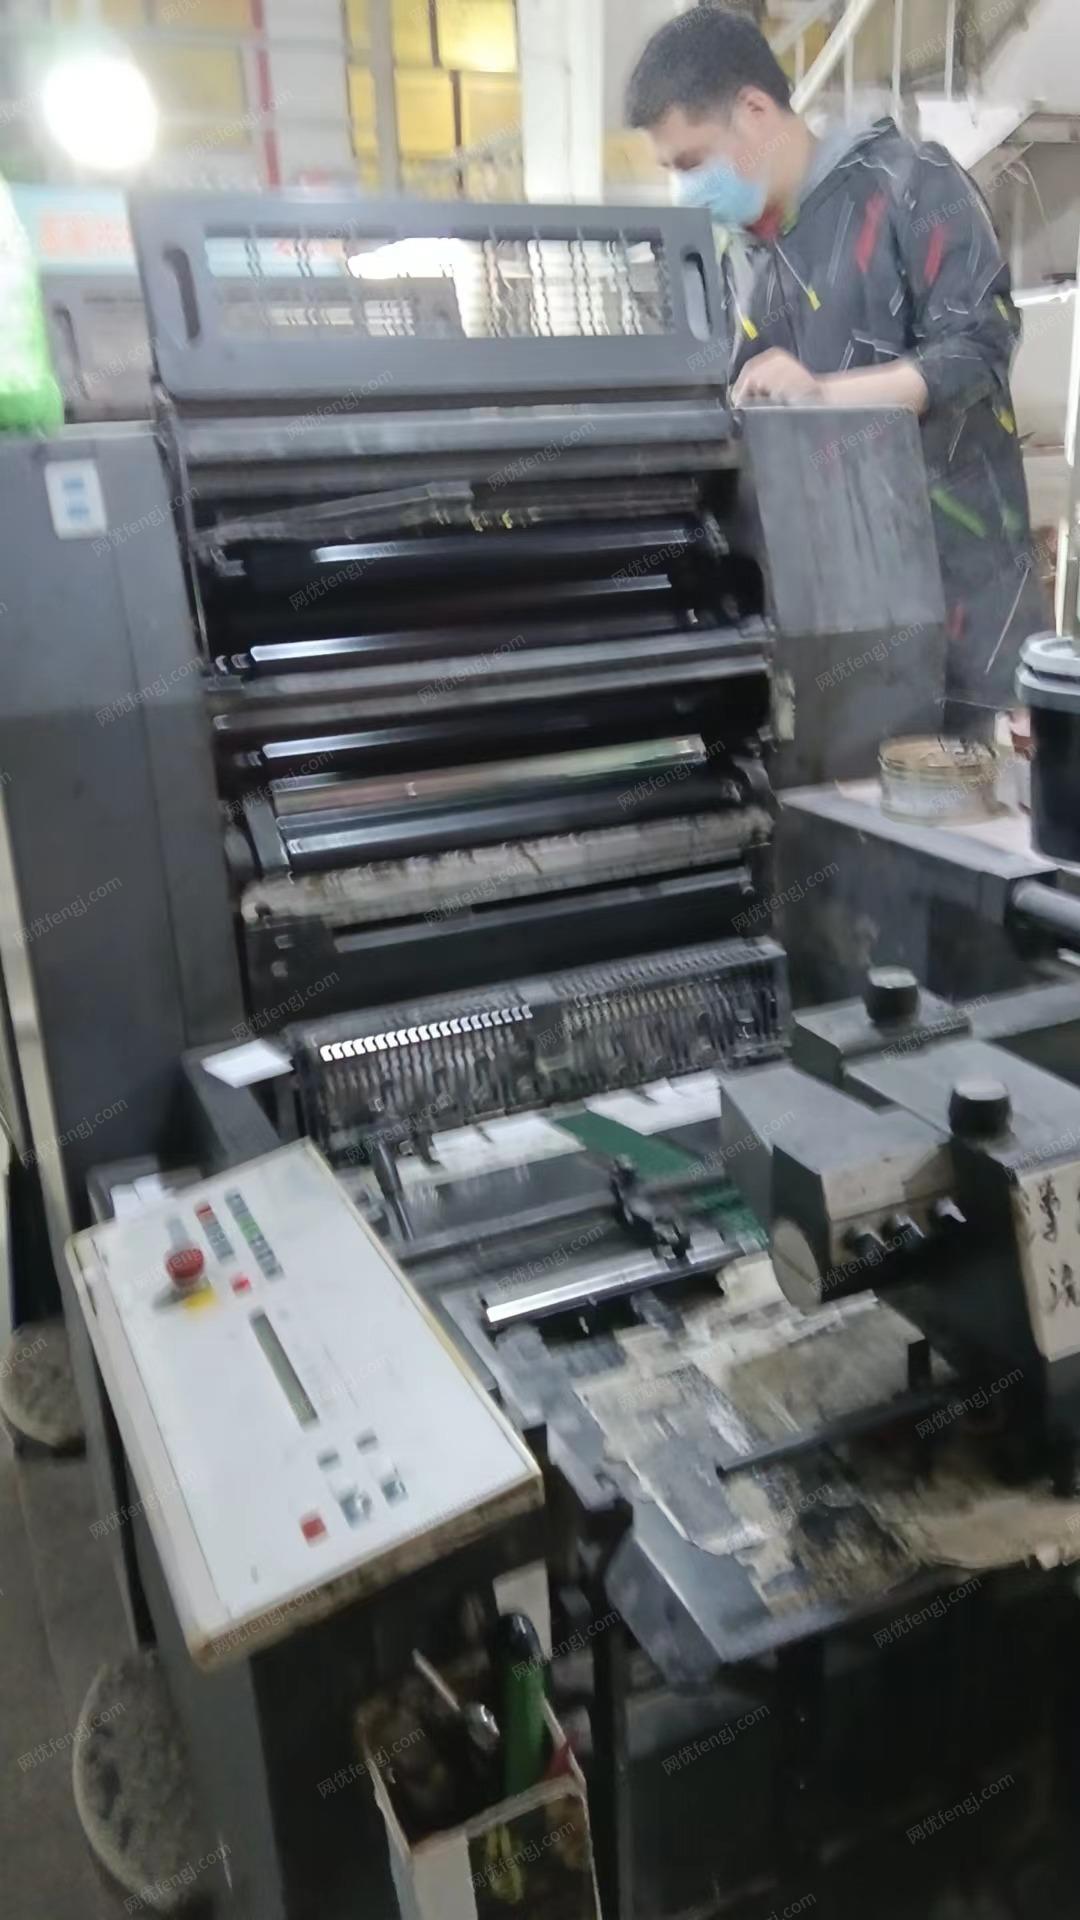 印刷厂处理07/98年海德堡双色8开印刷机/5色8开印刷机（卖其中1台），有图片